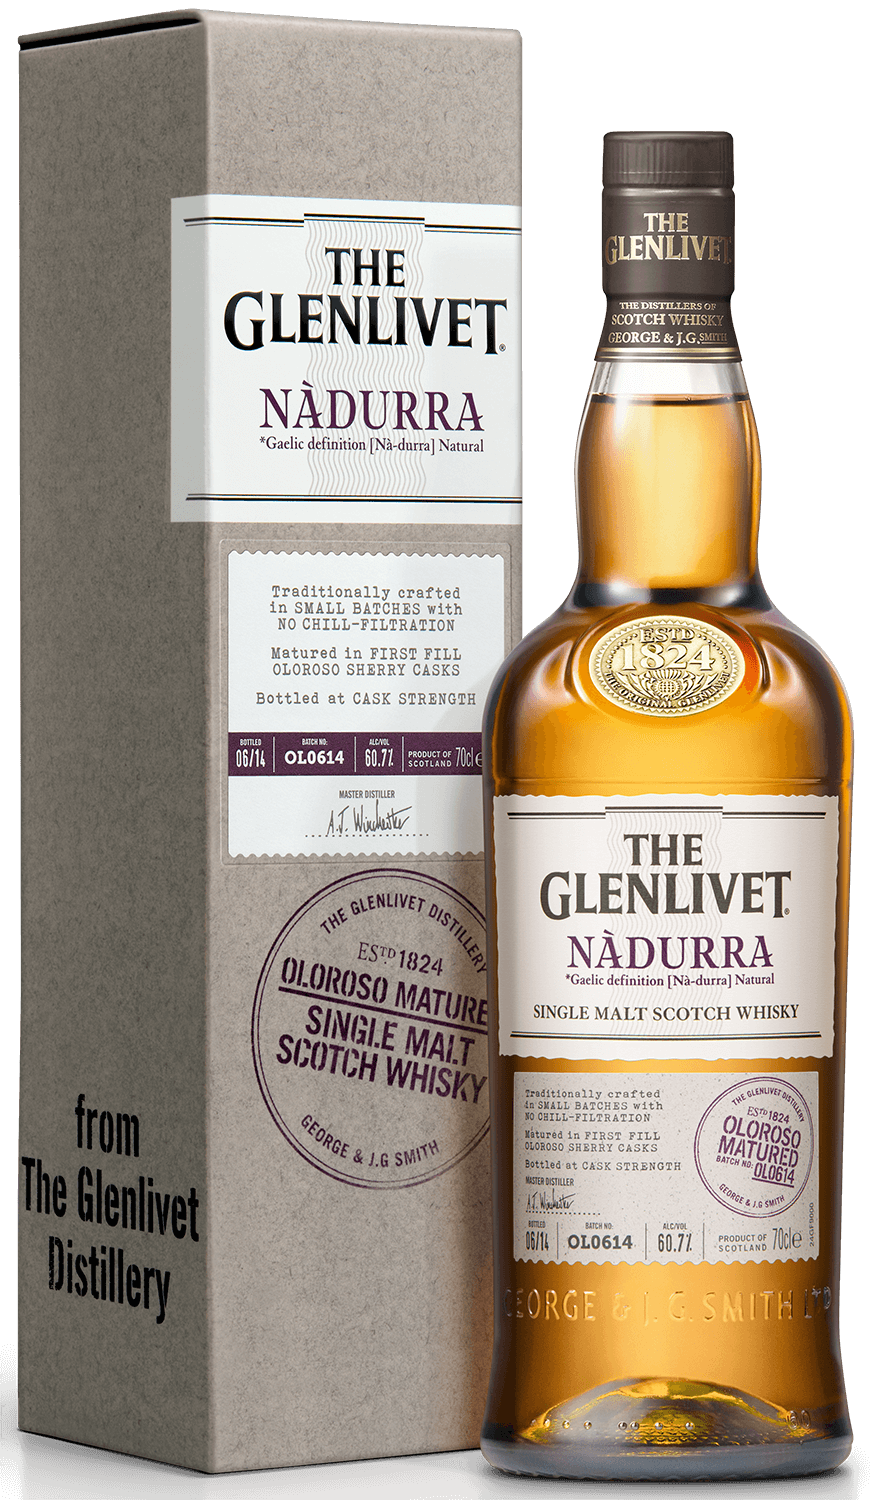 The Glenlivet Nadurra Oloroso Matured single malt scotch whisky (gift box) the glenlivet single malt scotch whisky 18 y o gift box